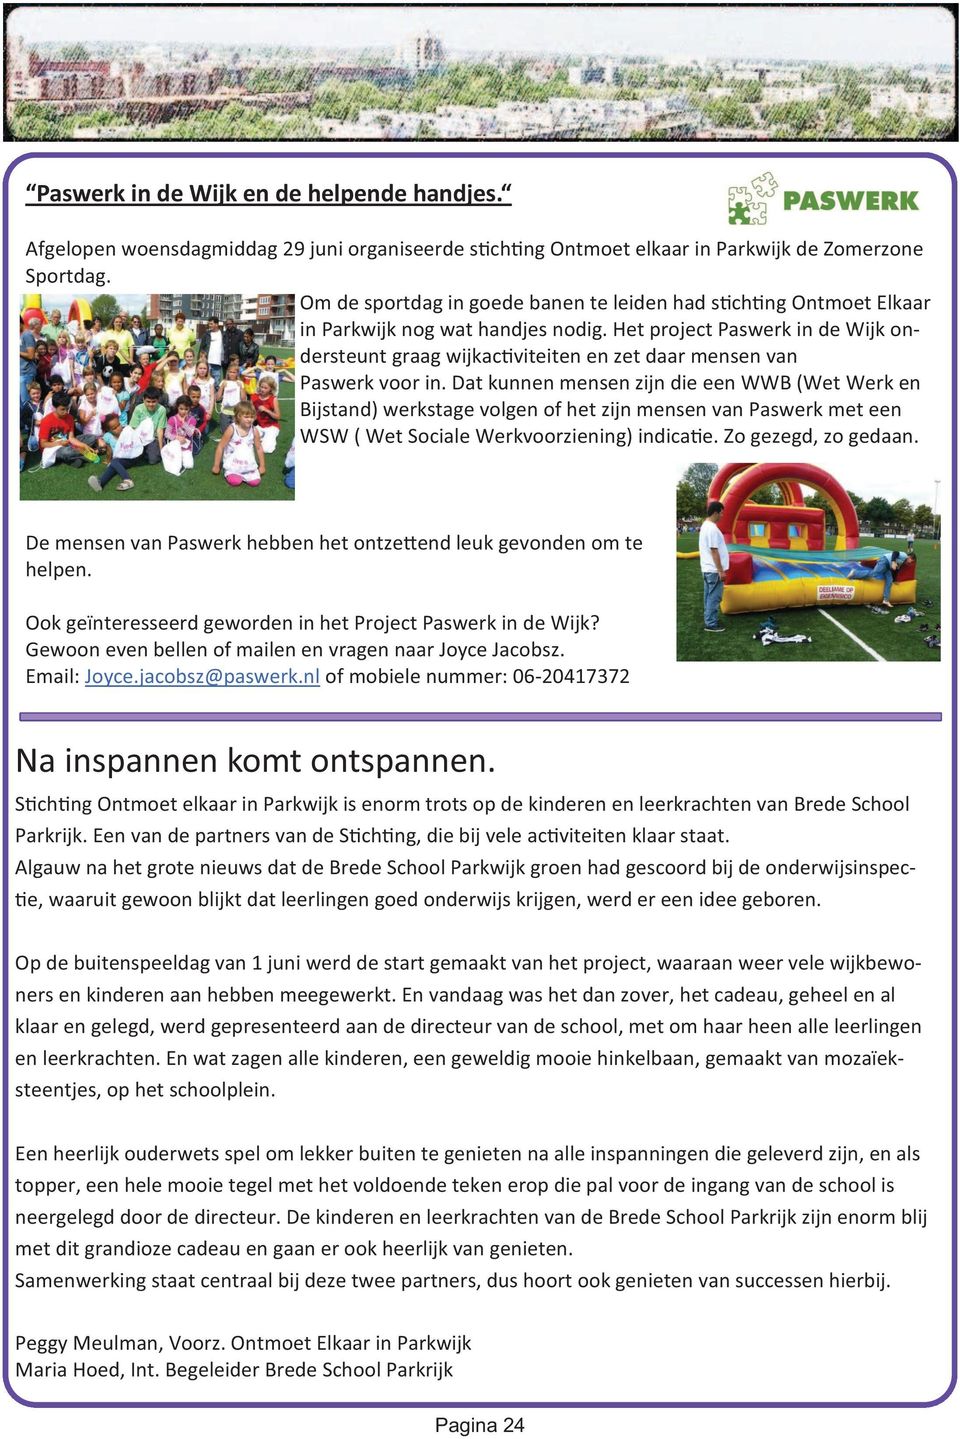 Het project Paswerk in de Wijk ondersteunt graag wijkac viteiten en zet daar mensen van Paswerk voor in.